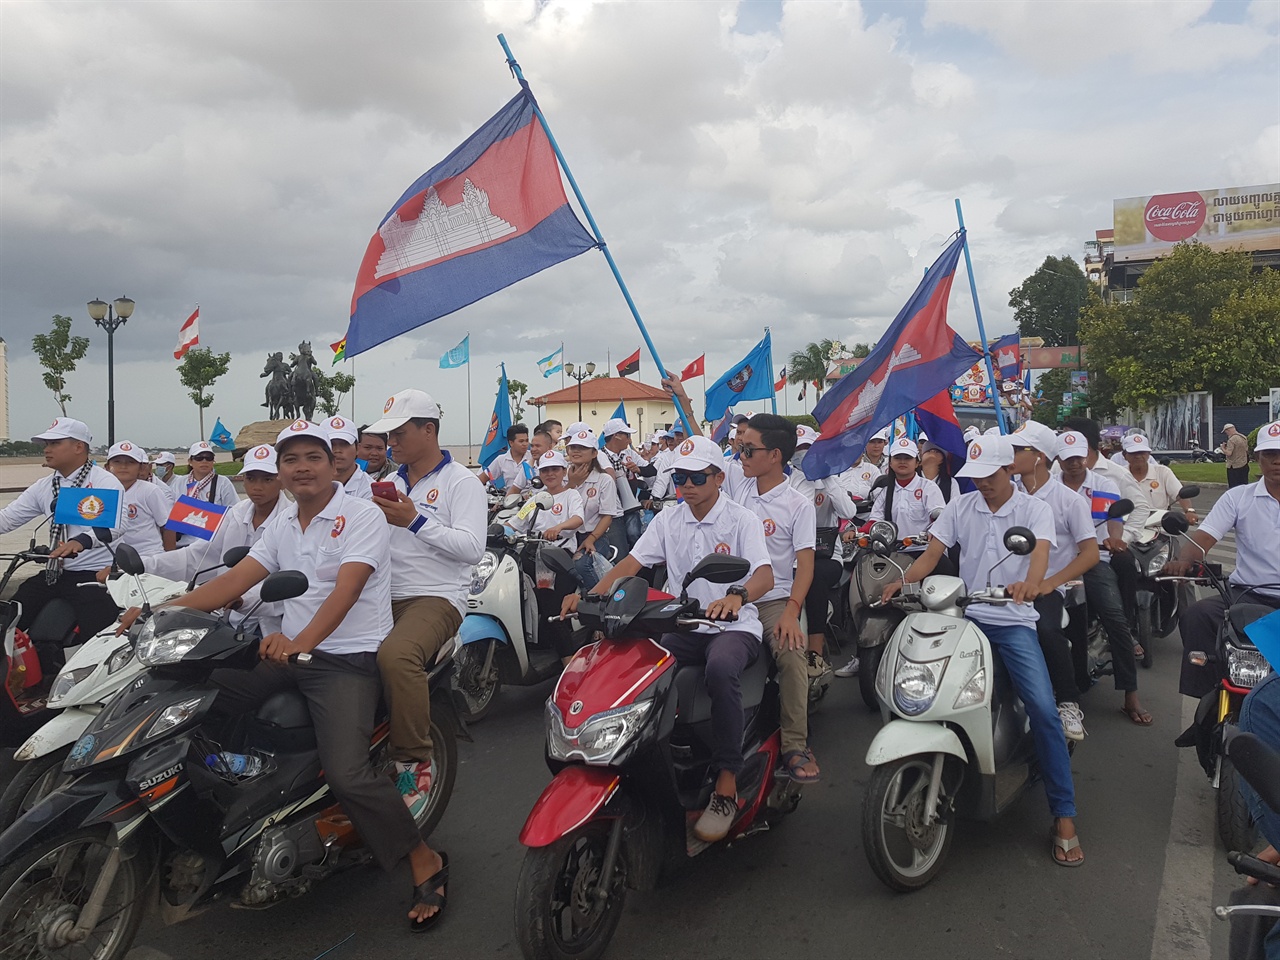 공식선거유세기간 마지막날인 지난 7월 27일 프놈펜시내 거리유세에 나선 집권 인민당(CPP) 지지자들의 모습.